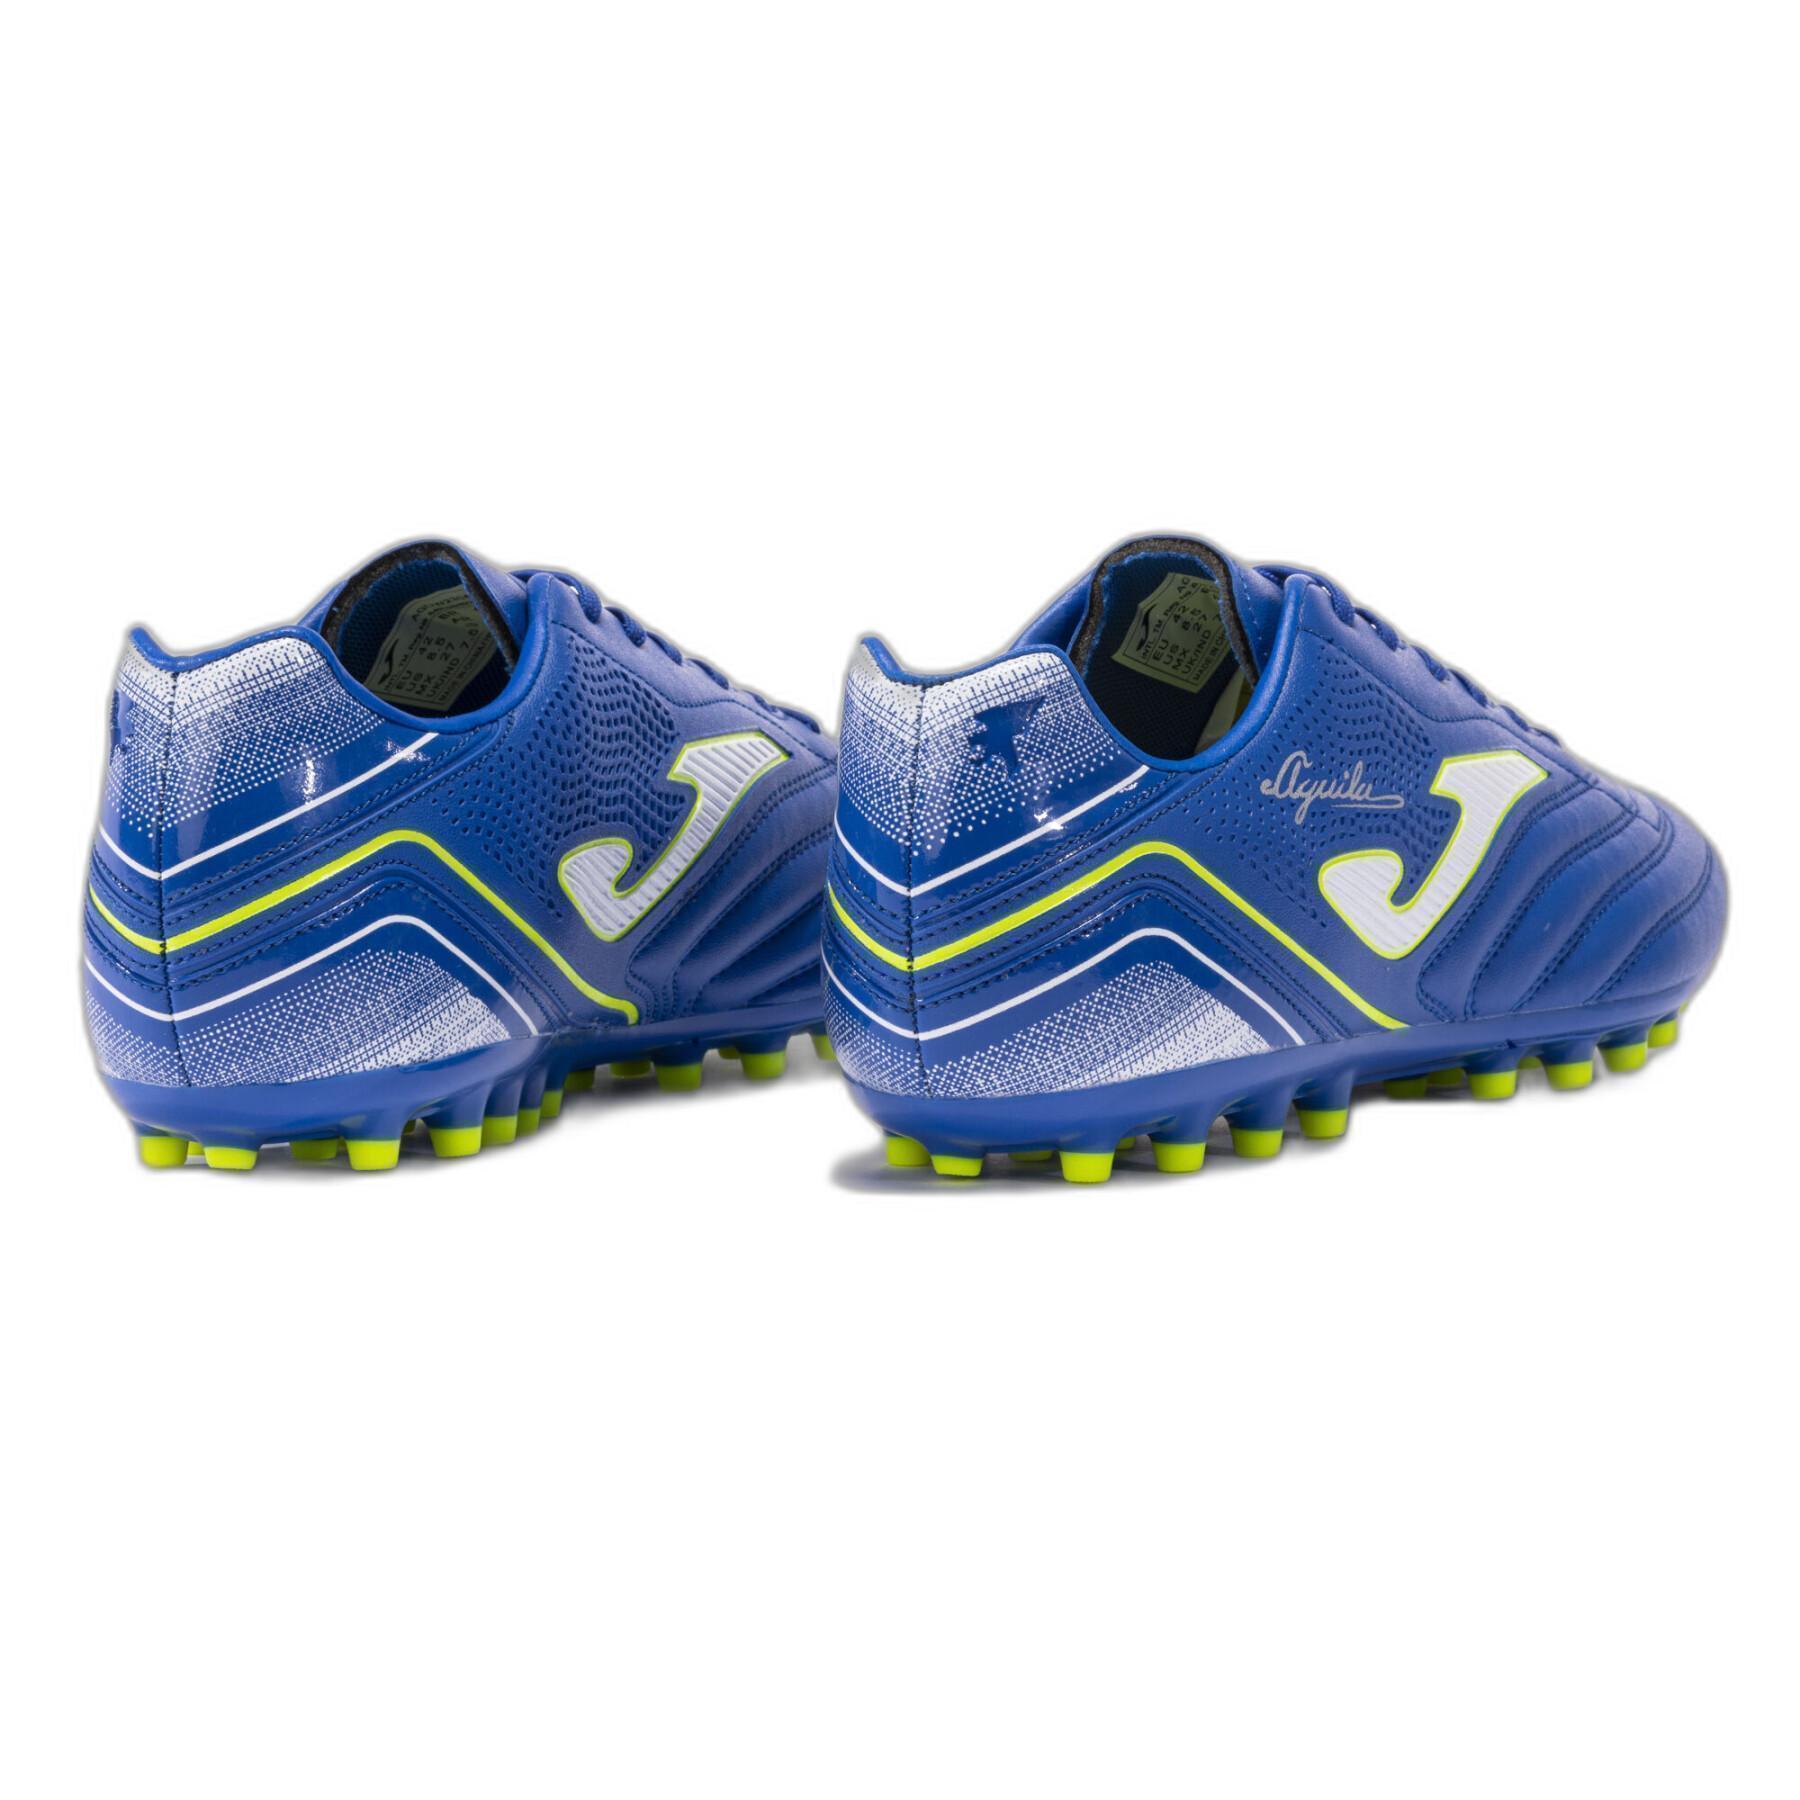 Chaussures de football Joma Aguila 2304 AG